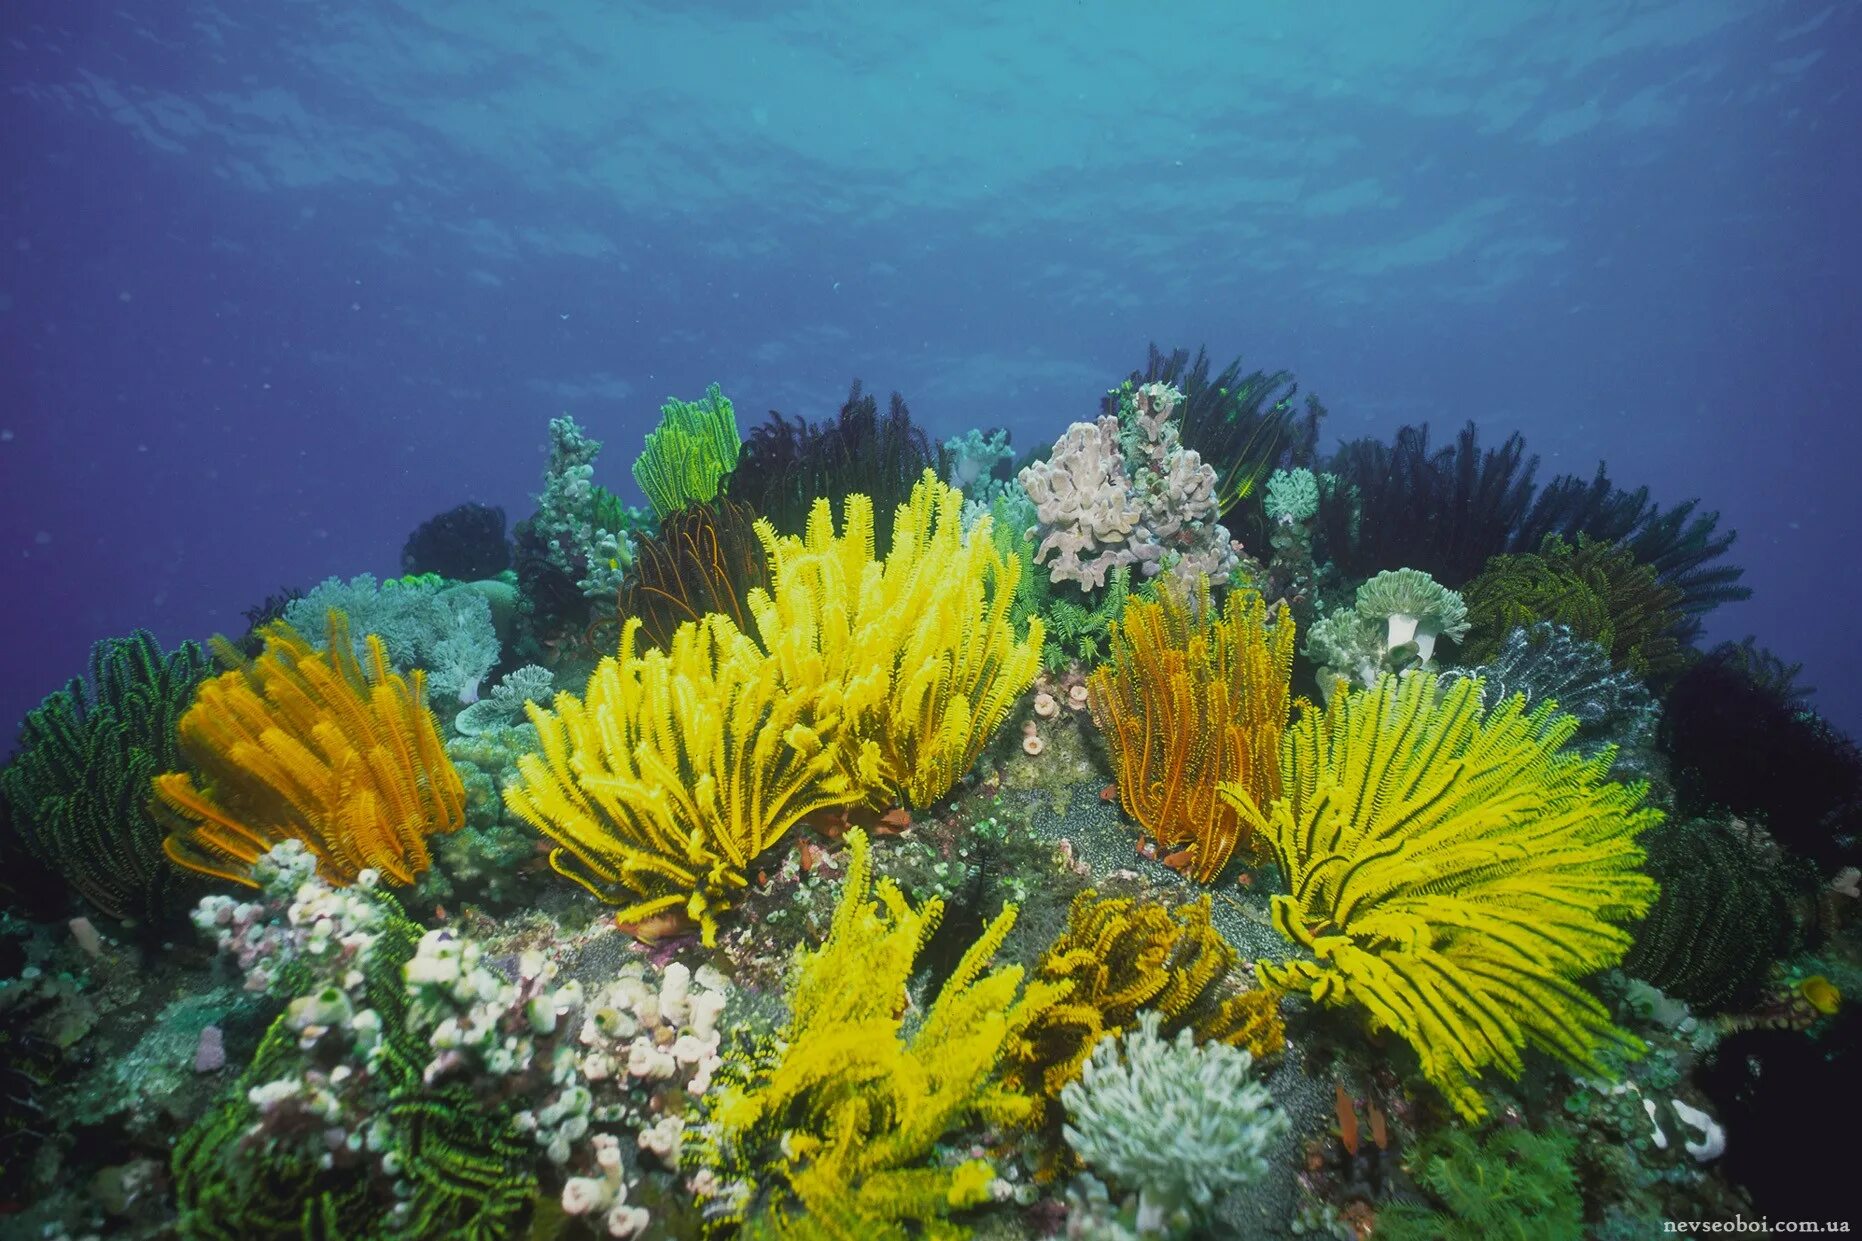 Диатомеи водоросли Тихого океана. Морские лилии Атлантический океан. Кораллы водоросли индийского океана. Фукусы индийский океан. Животные и растение океанов и морей